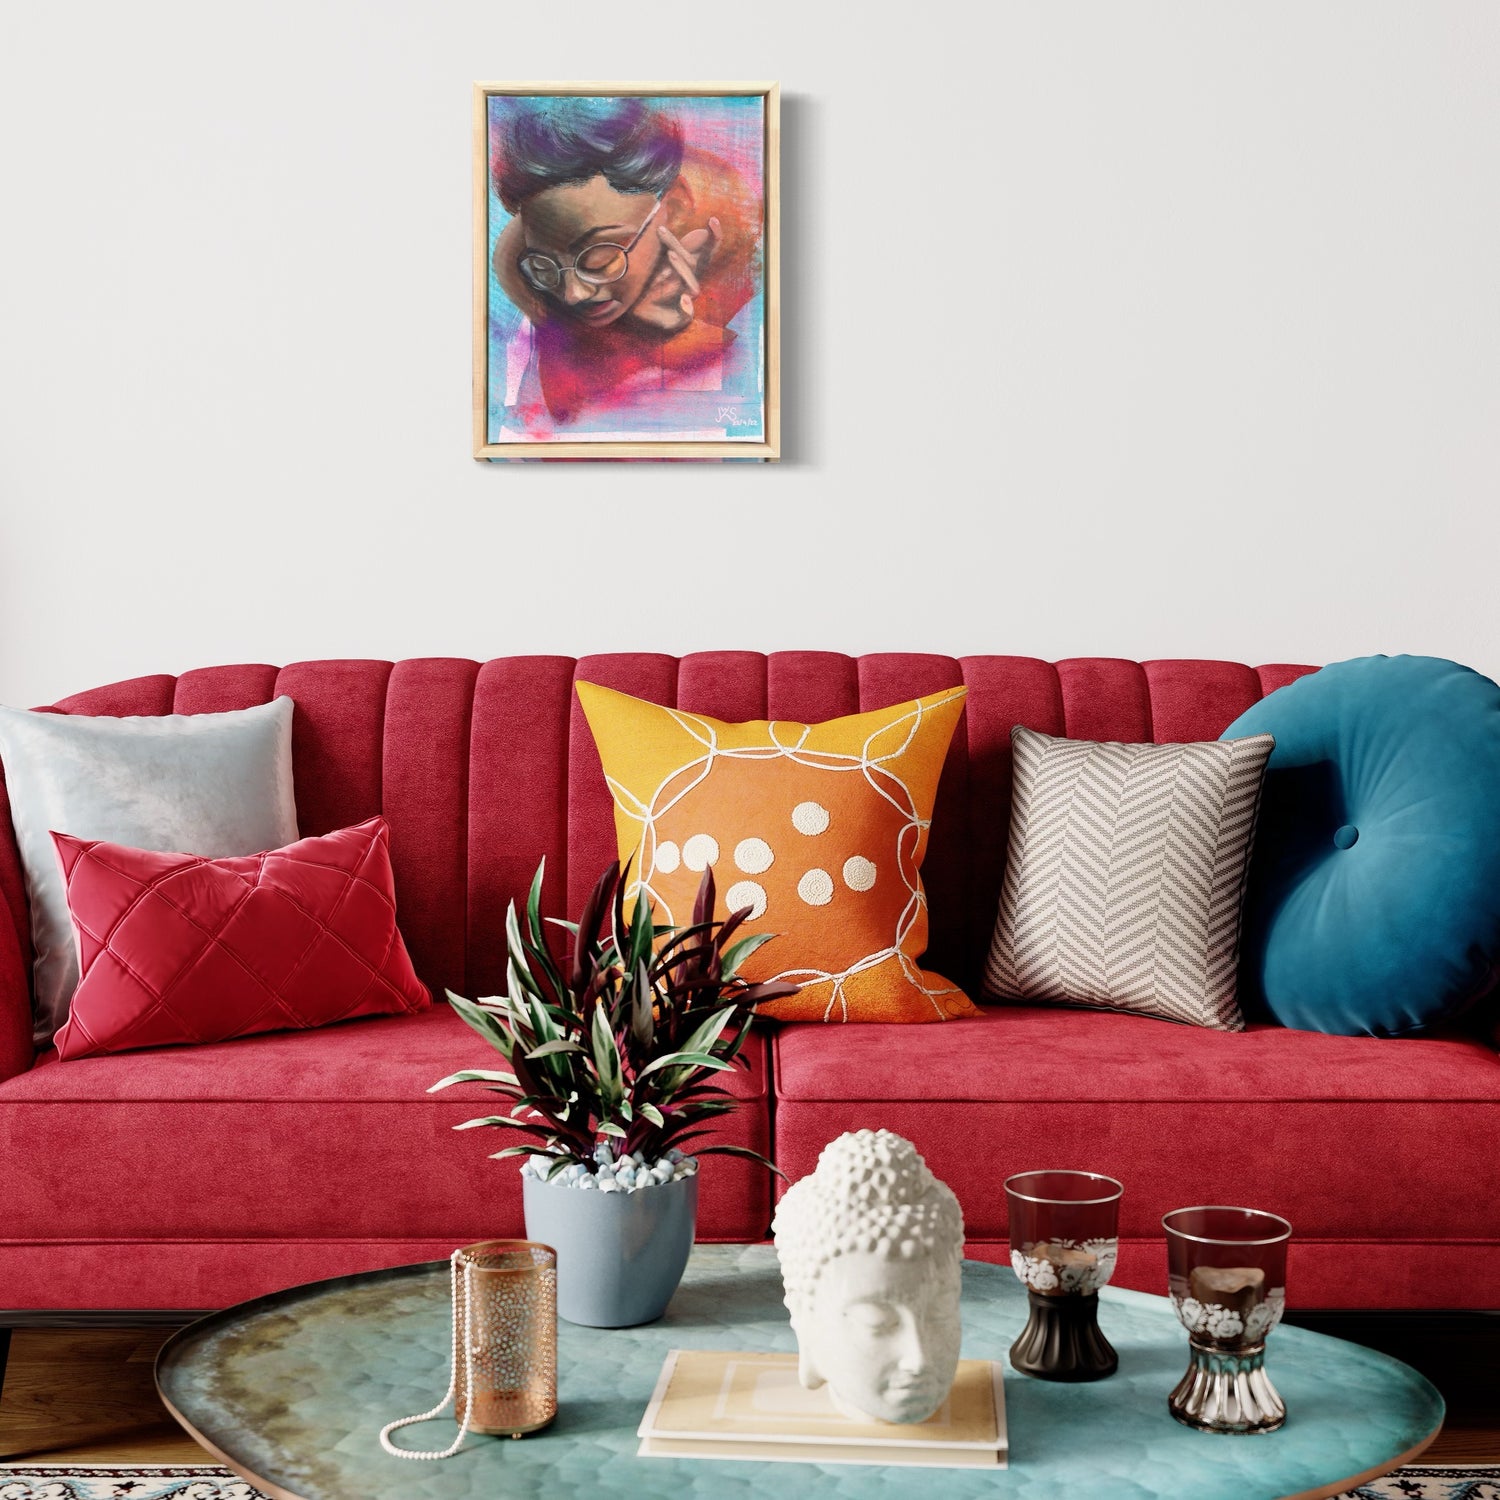 Ein modernes Wohnzimmer mit einem roten Samtsofa, das mit verschiedenen bunten Kissen, darunter orange, gelbe, blaue und weiße Muster, geschmückt ist. Eine Pflanze, Kerzen und eine Buddhakopfskulptur stehen auf einem runden Couchtisch. An der weißen Wand über dem Sofa hängt ein lebendiges Gemälde von Sabrina Wohlfeil Kunst.